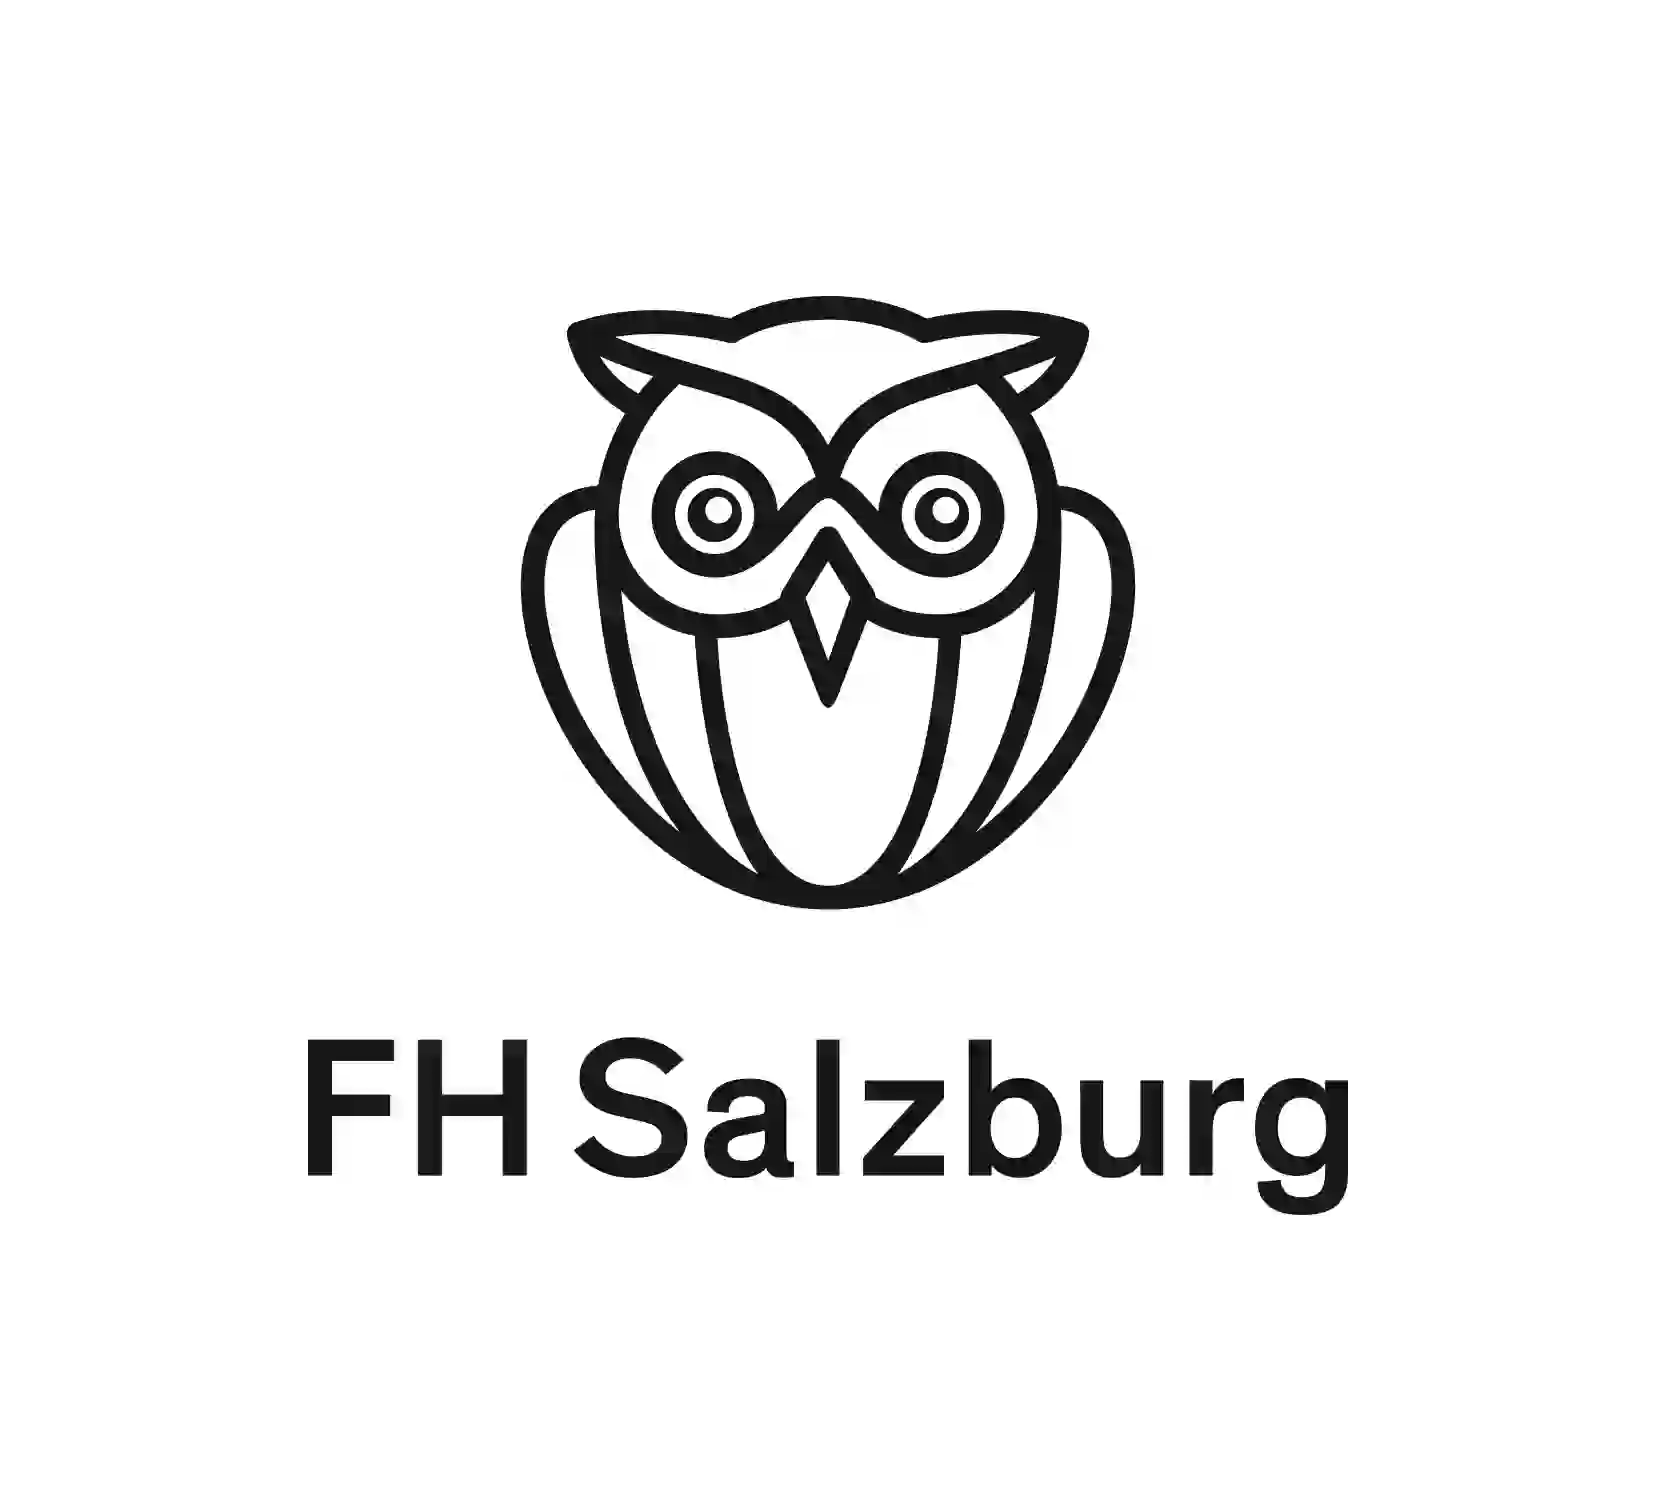 Fachhochschule Salzburg logo.